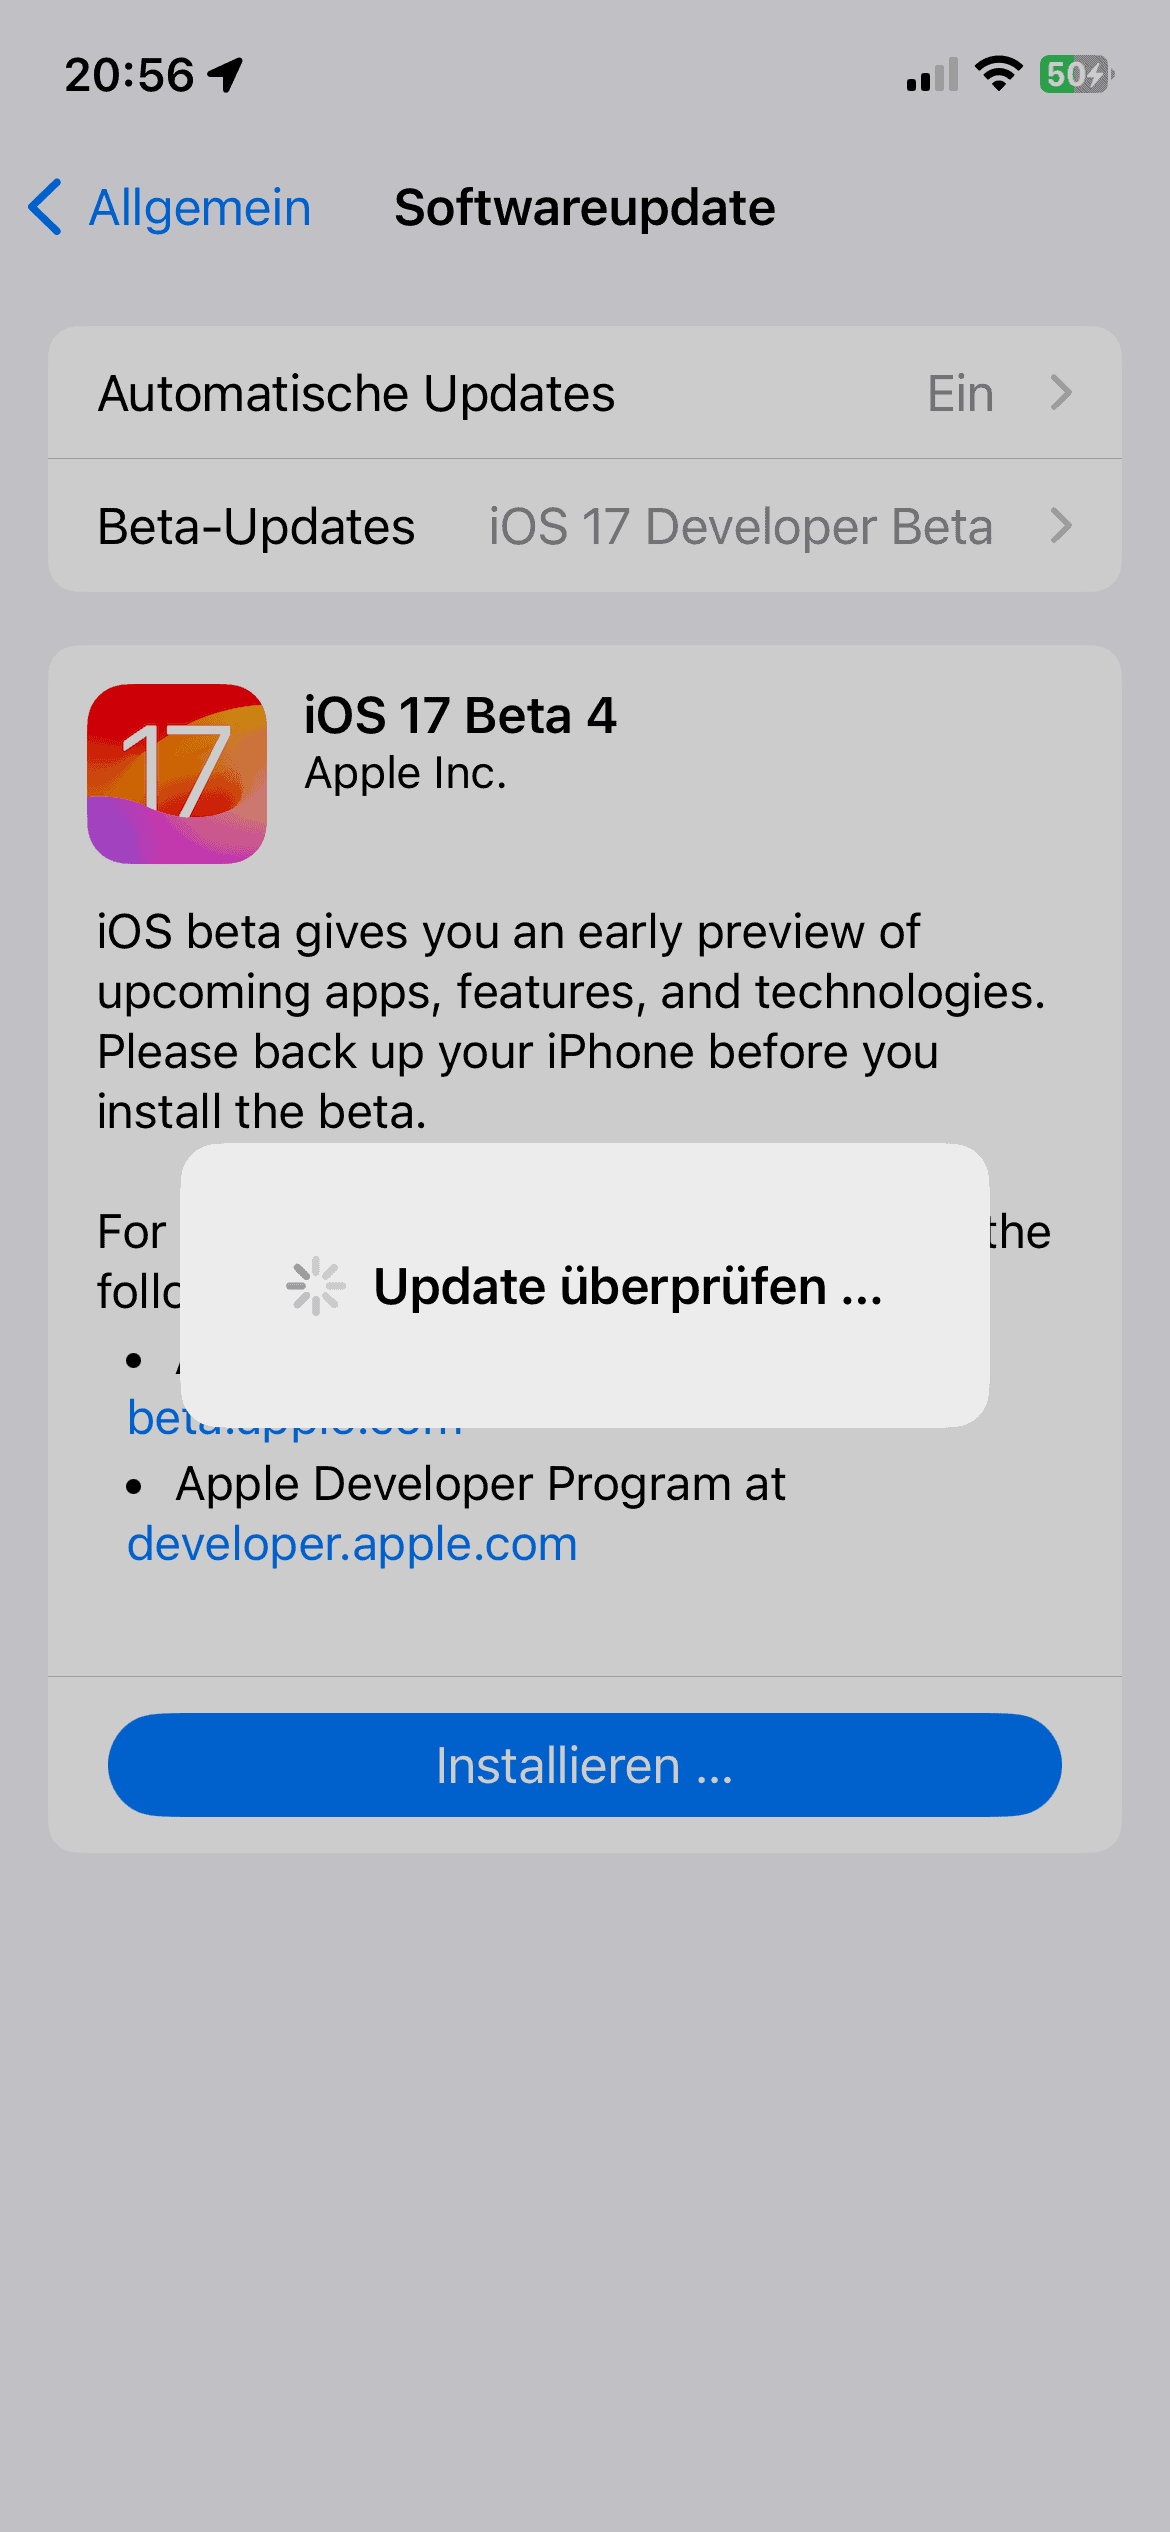 iOS 17 Beta 4 Installscreen vom letzten Mittwoch